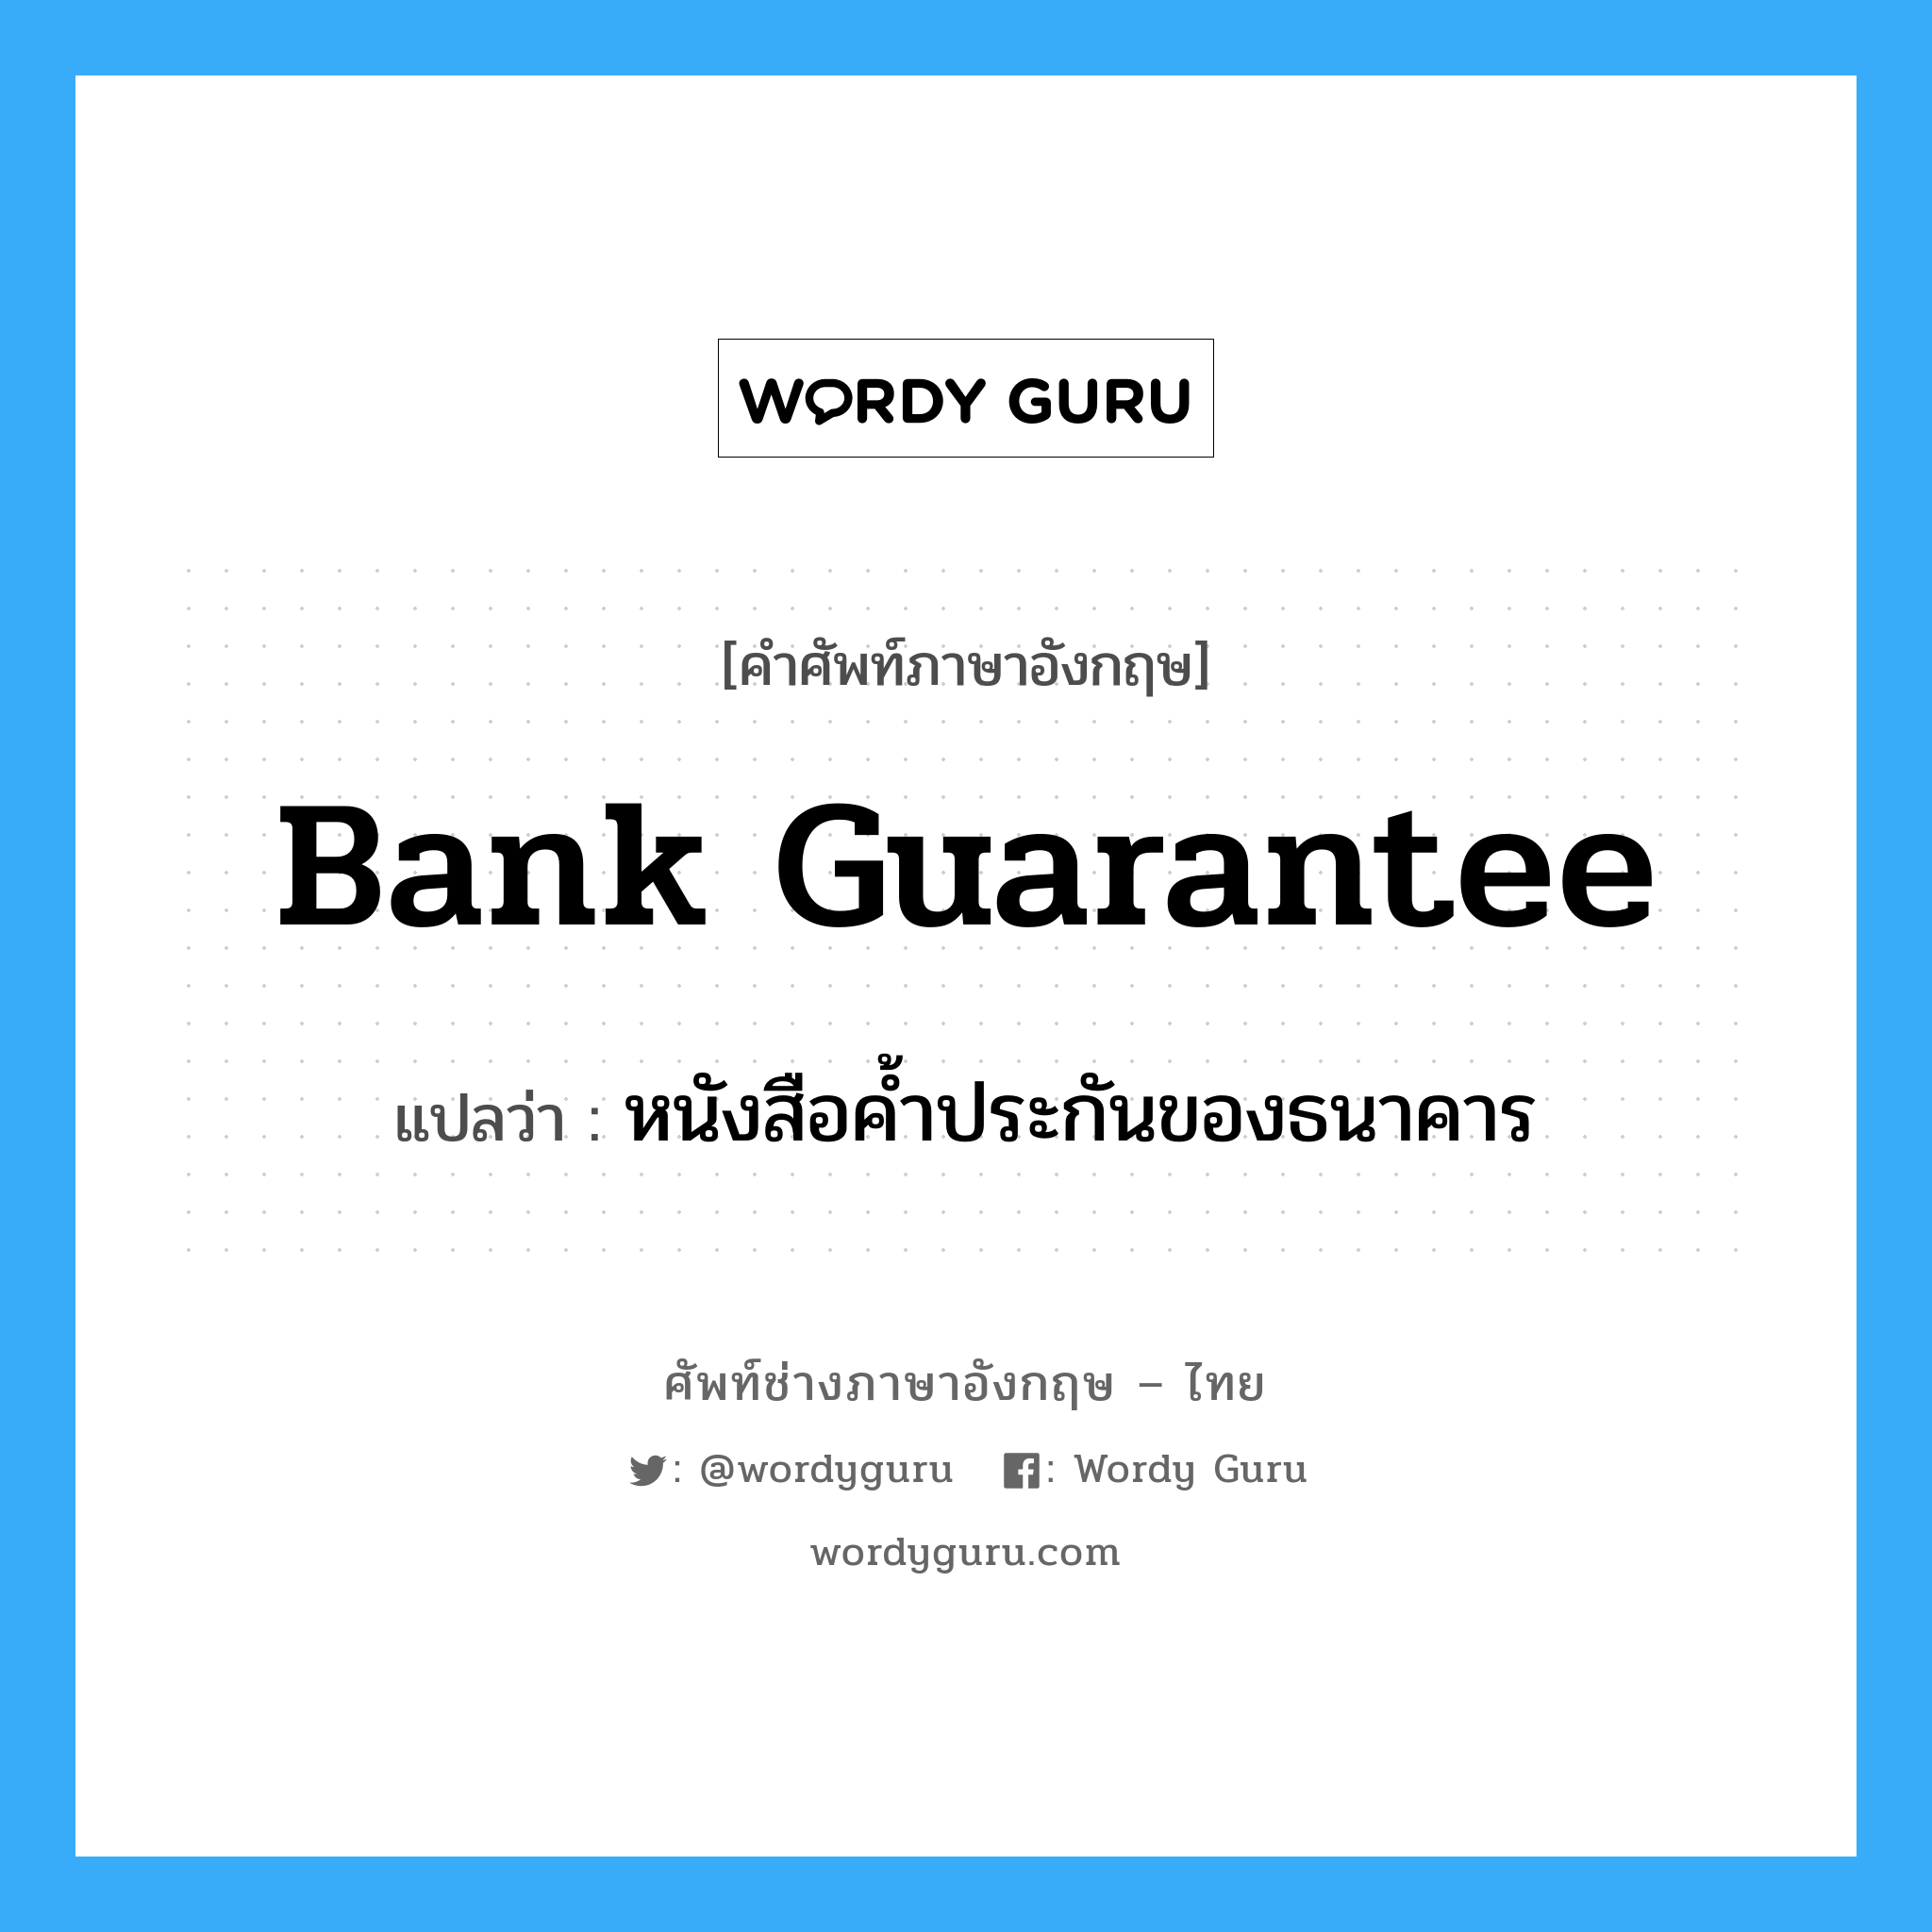 หนังสือค้ำประกันของธนาคาร ภาษาอังกฤษ?, คำศัพท์ช่างภาษาอังกฤษ - ไทย หนังสือค้ำประกันของธนาคาร คำศัพท์ภาษาอังกฤษ หนังสือค้ำประกันของธนาคาร แปลว่า Bank Guarantee